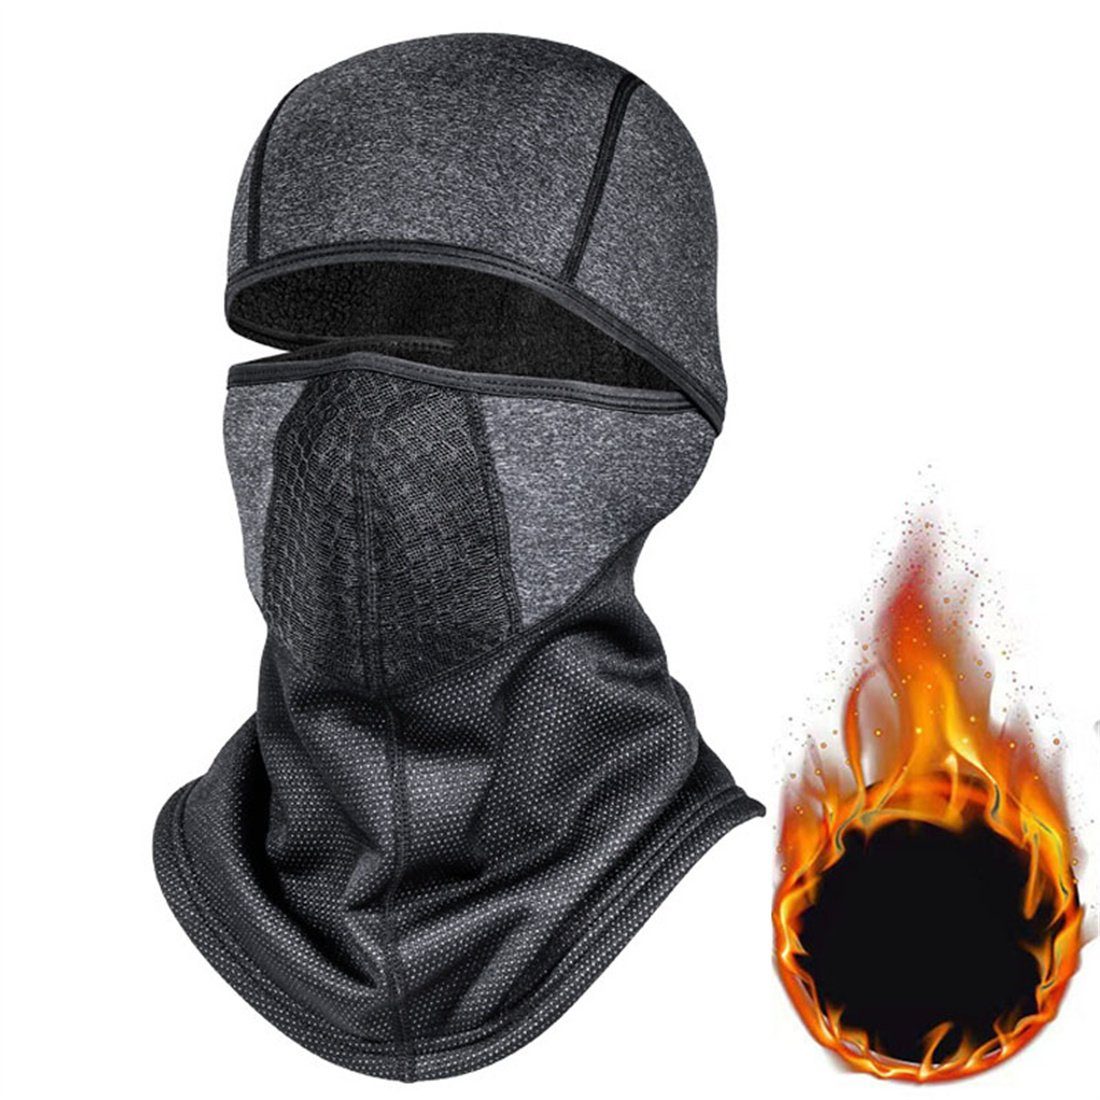 DÖRÖY Sturmhaube Winter-Ski-Maske, Outdoor-Radfahren Kopfbedeckung, Halsschutz dunkelgrau unisex